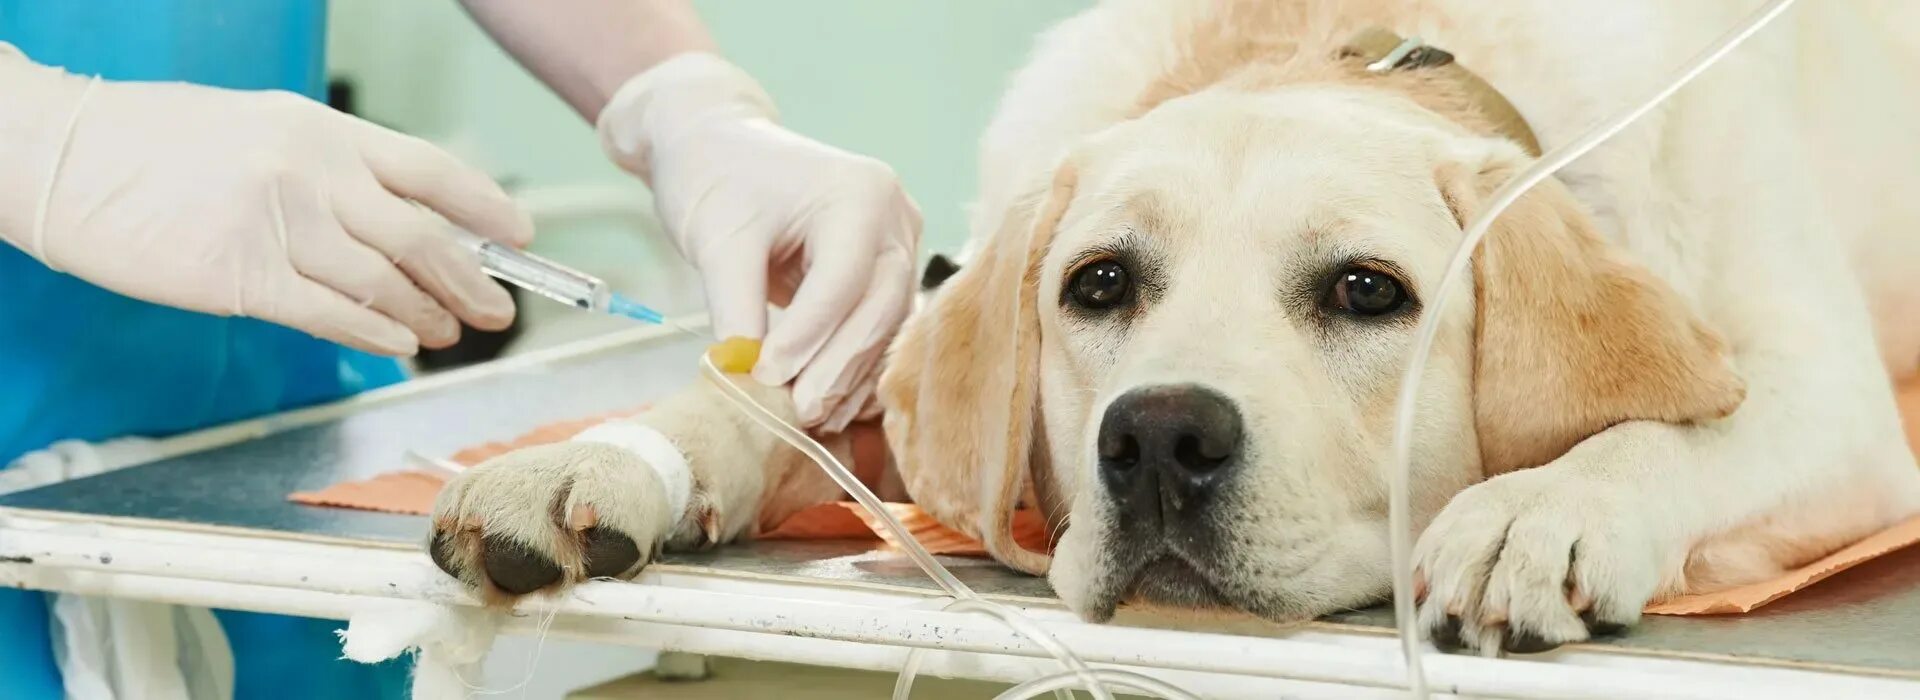 Операции ветеринаров. Пироплазмоз собак Ветеринария. Ветеринарная онкология. Стерилизация Ветеринария.